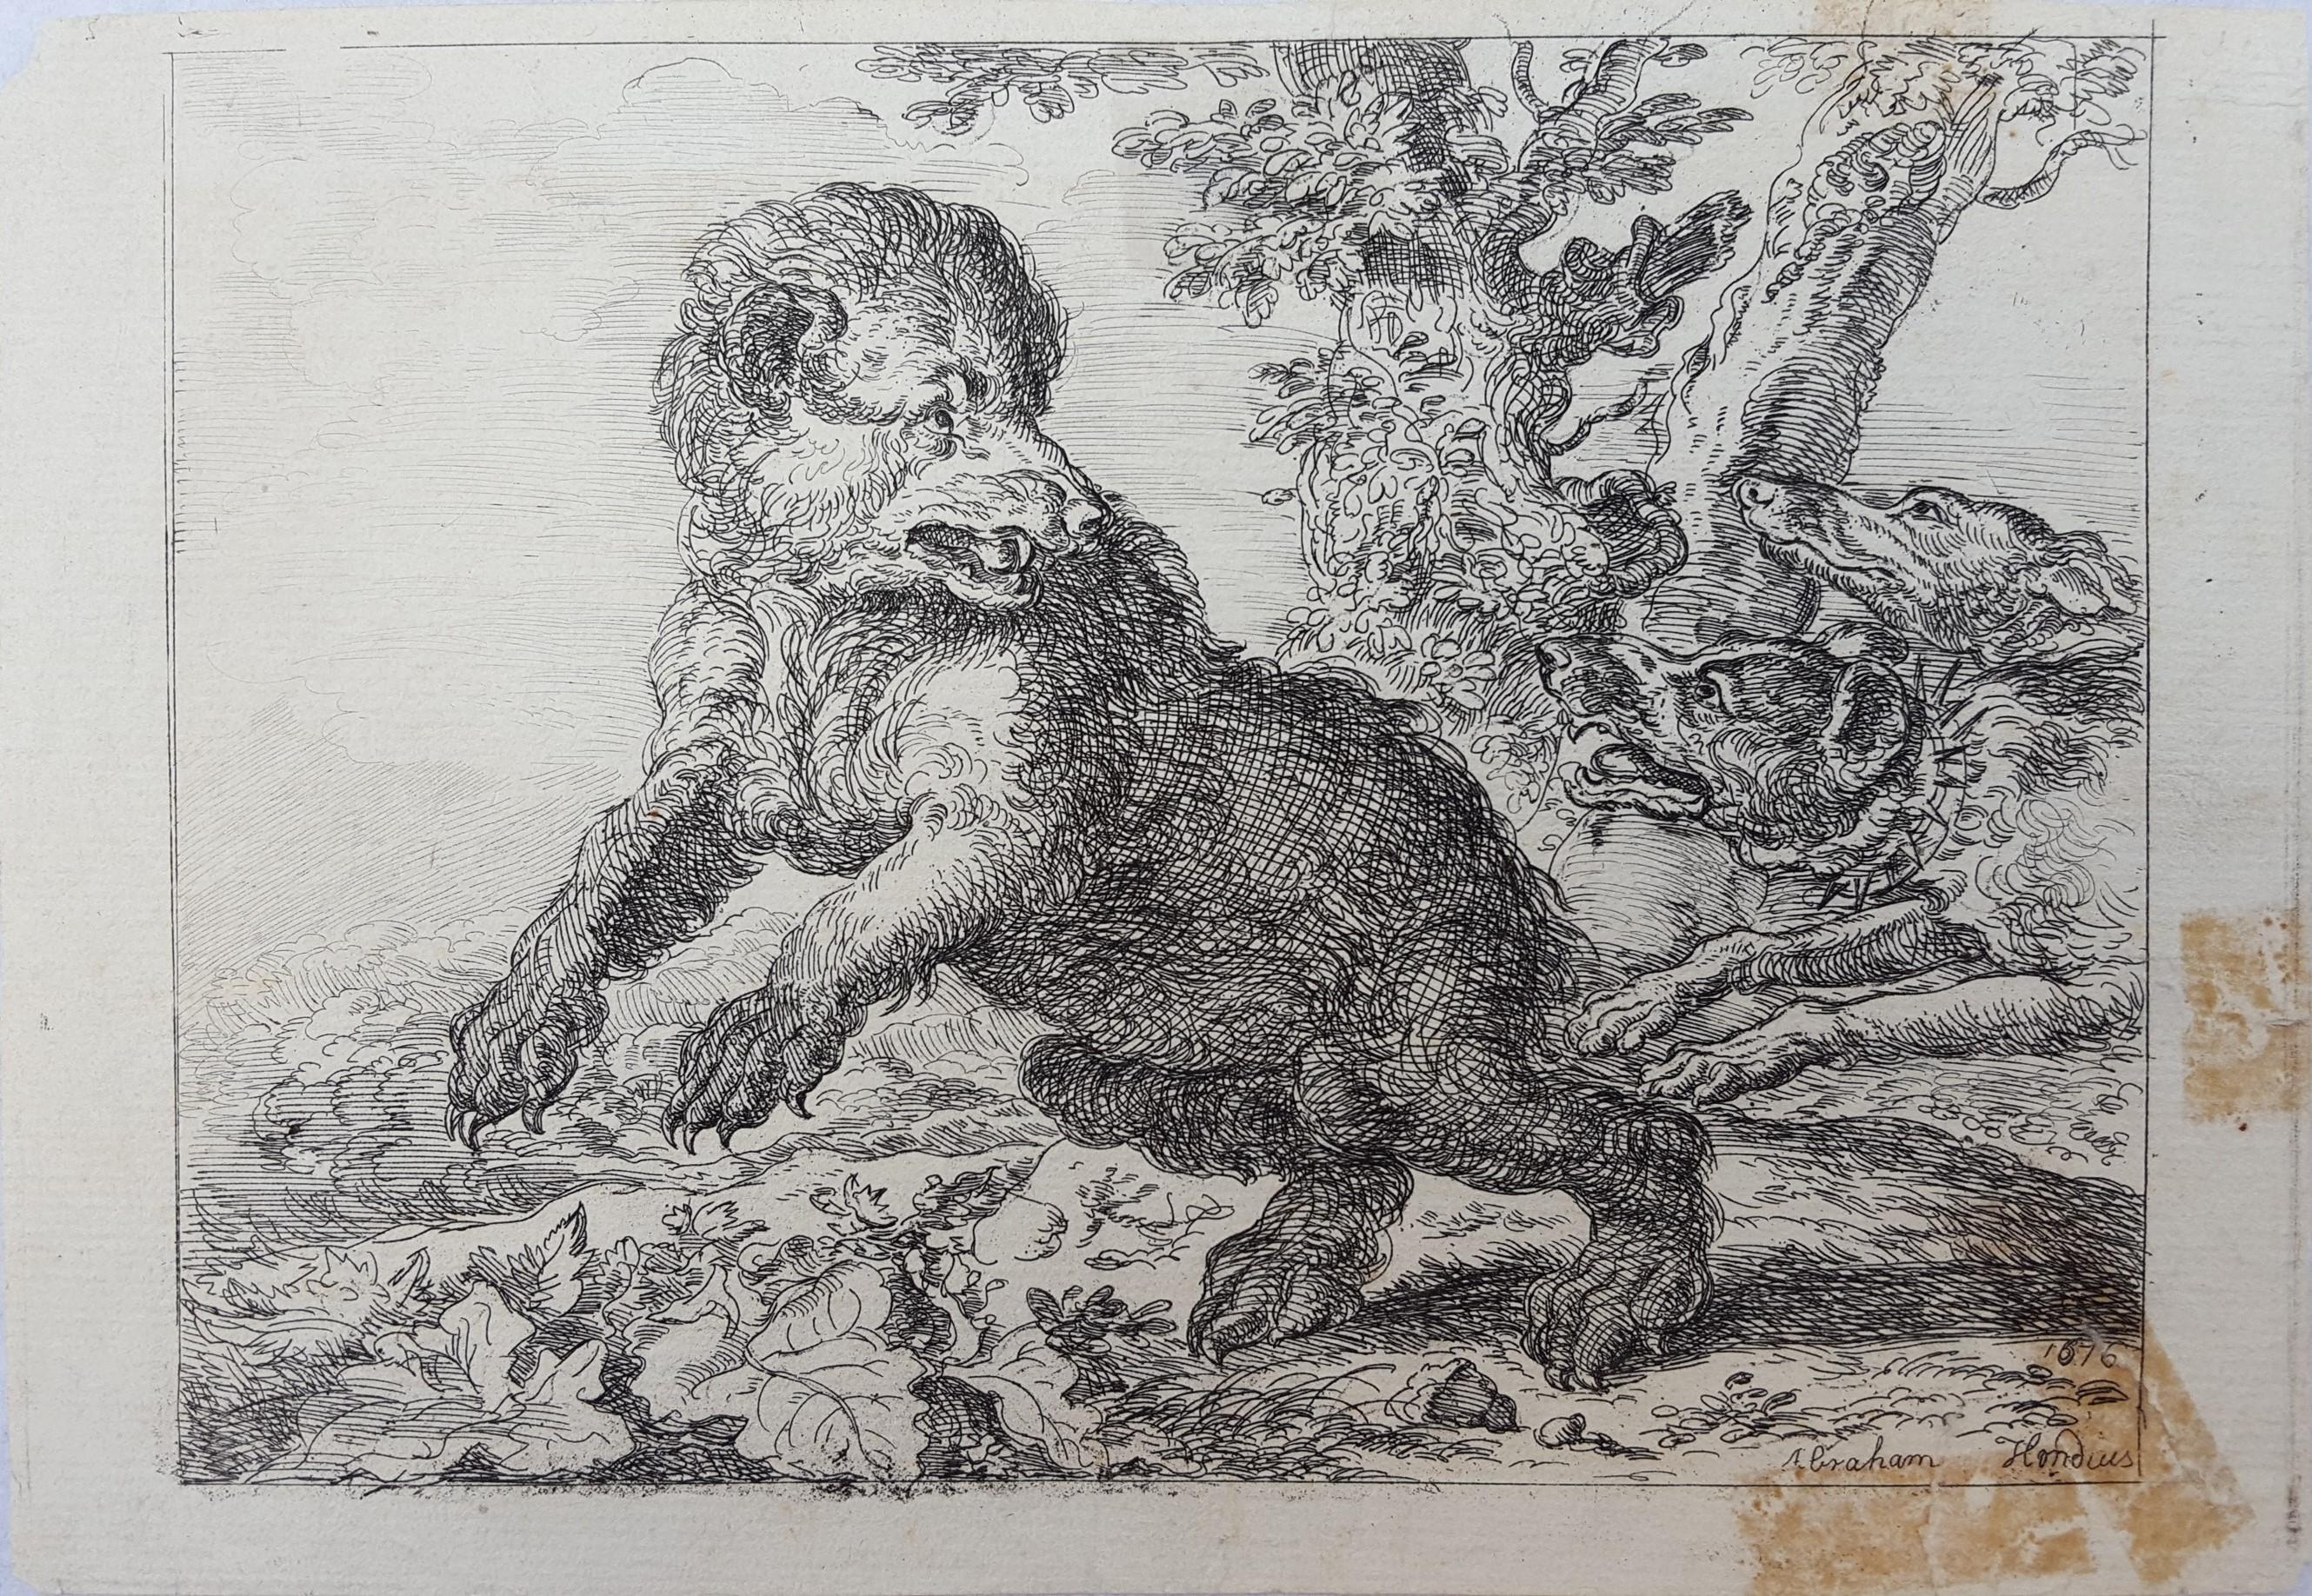 Honden Jagen Op Een Beer (Hounds Hunting a Bear) /// Paysage de vieux maîtres chiens - Print de Abraham Hondius